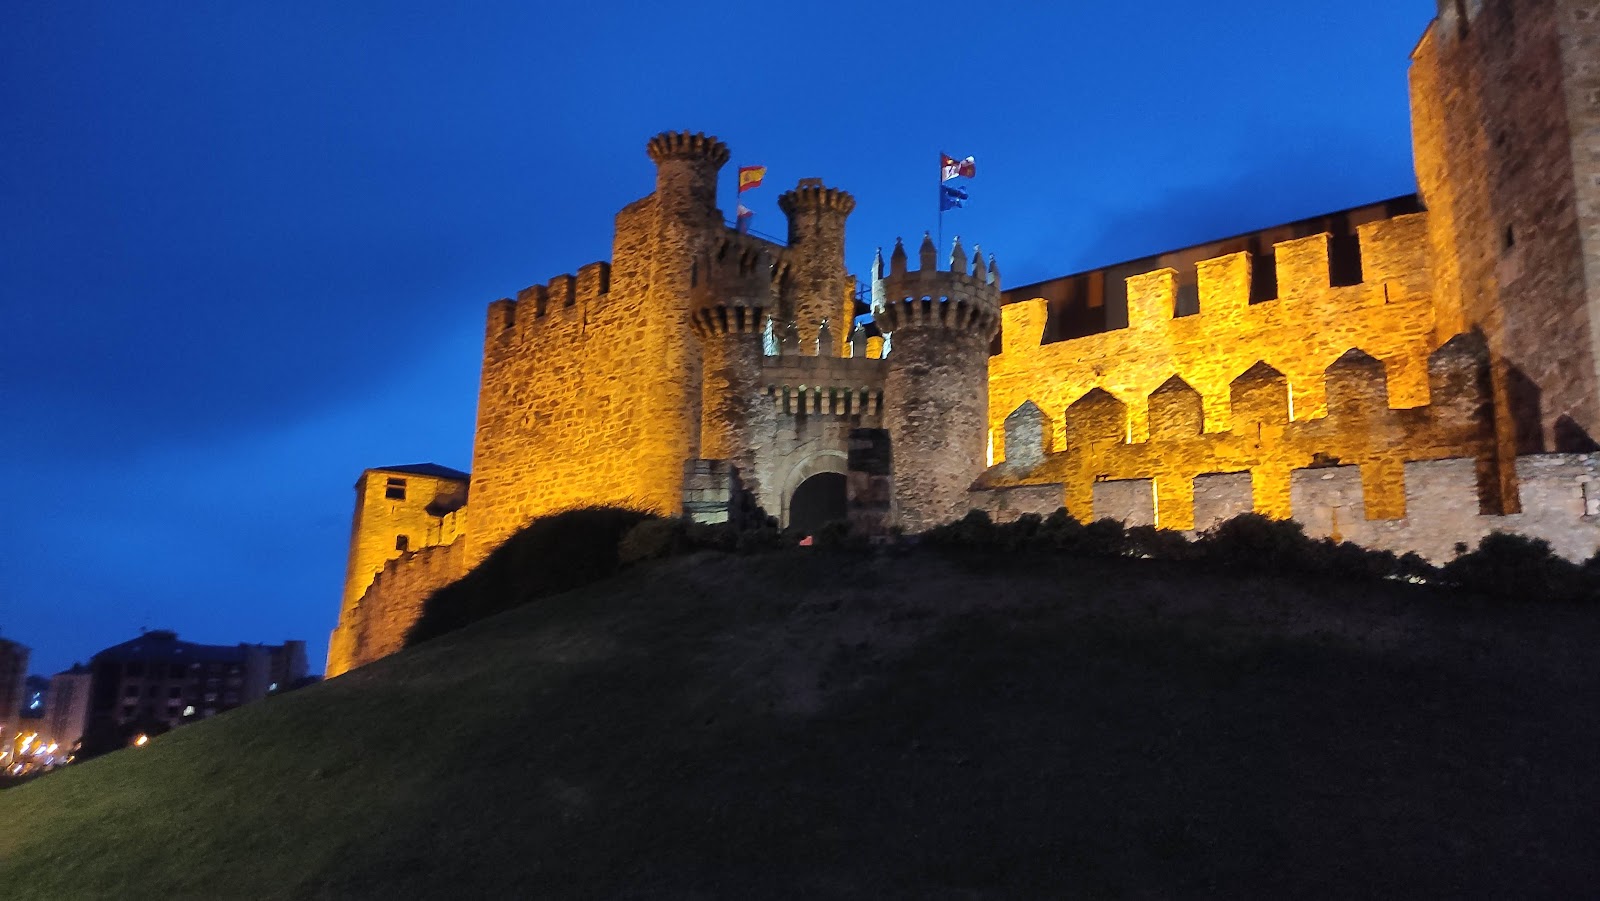 Horarios especiales y actividades culturales en el Castillo de los Templarios y en los Museos Municipales durante el puente de la Constitución 1